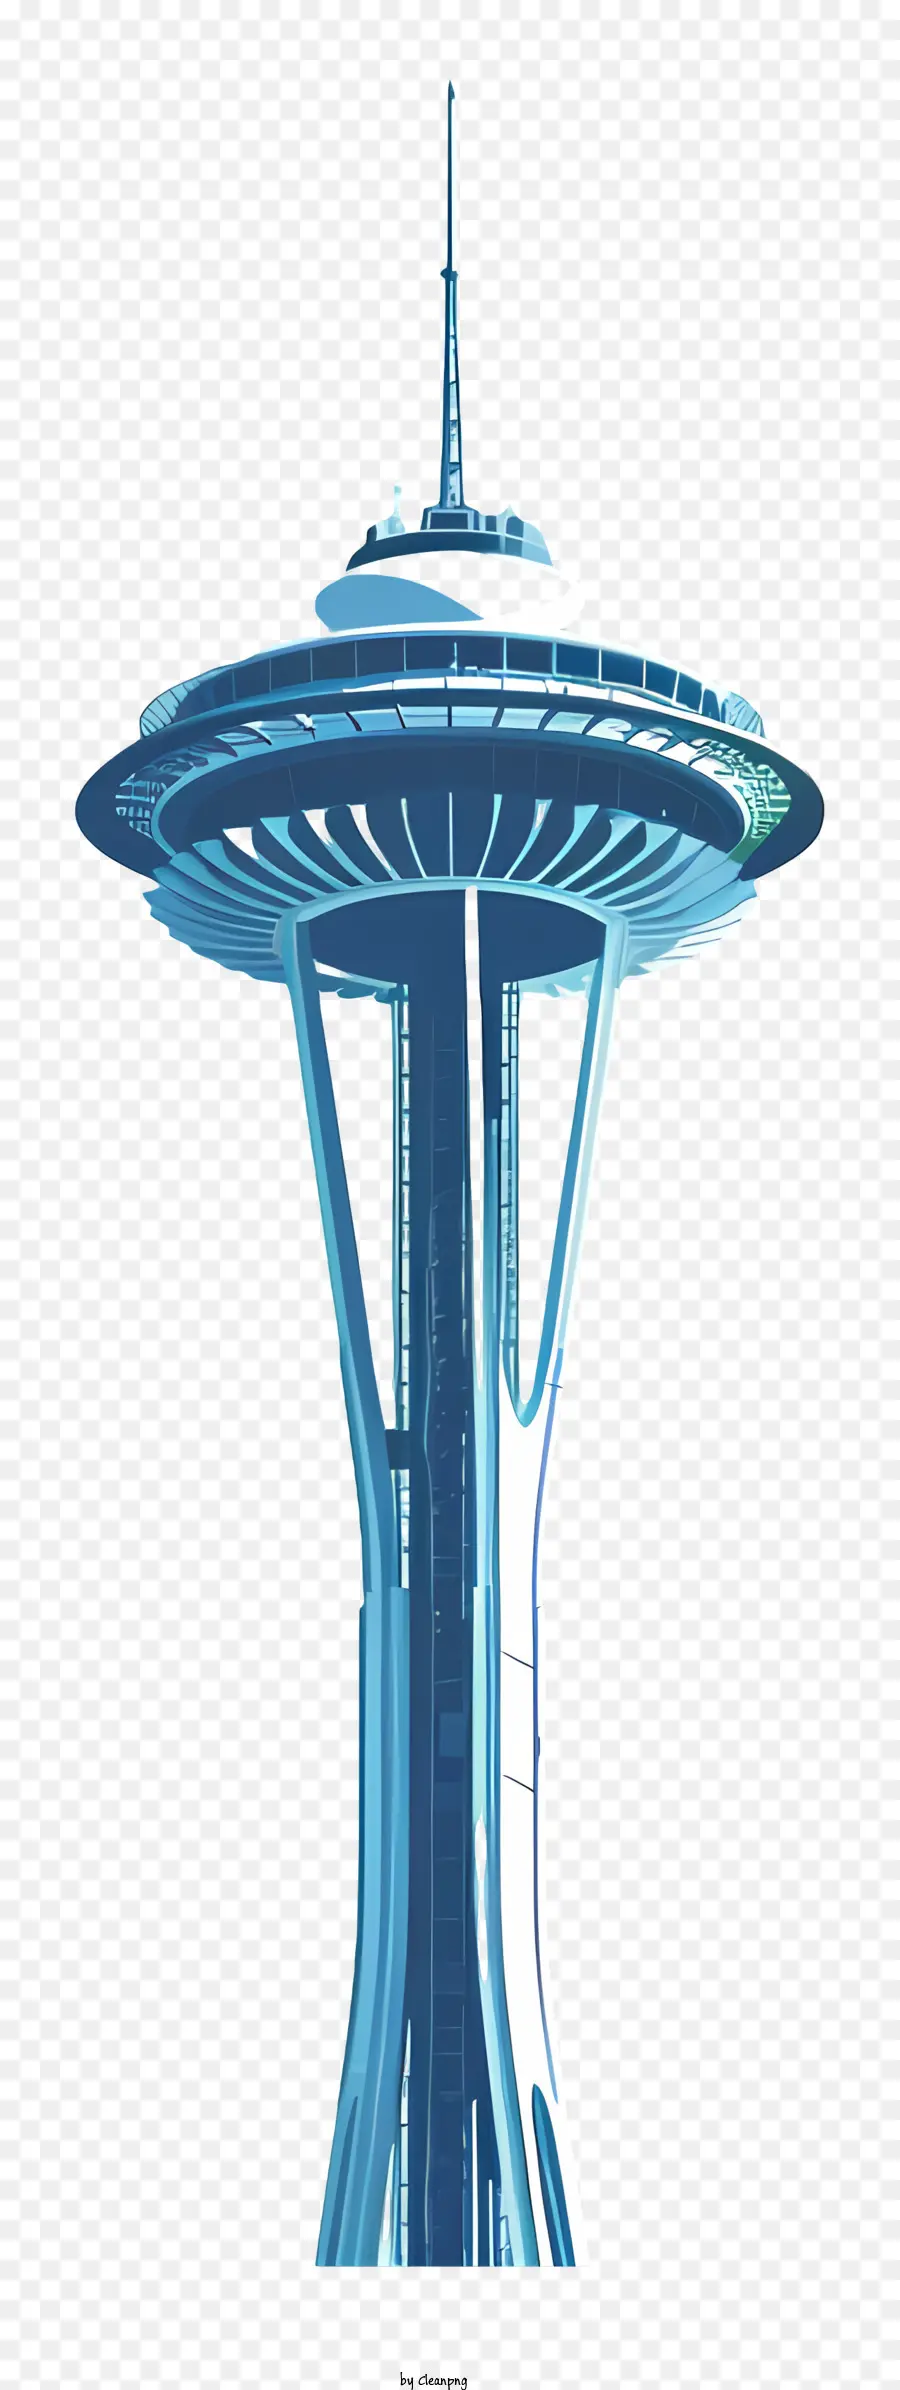 Space Nadel Space Nadel Tower Blue Spiral Design - Blauer Raumnadelturm mit weißer Spirale